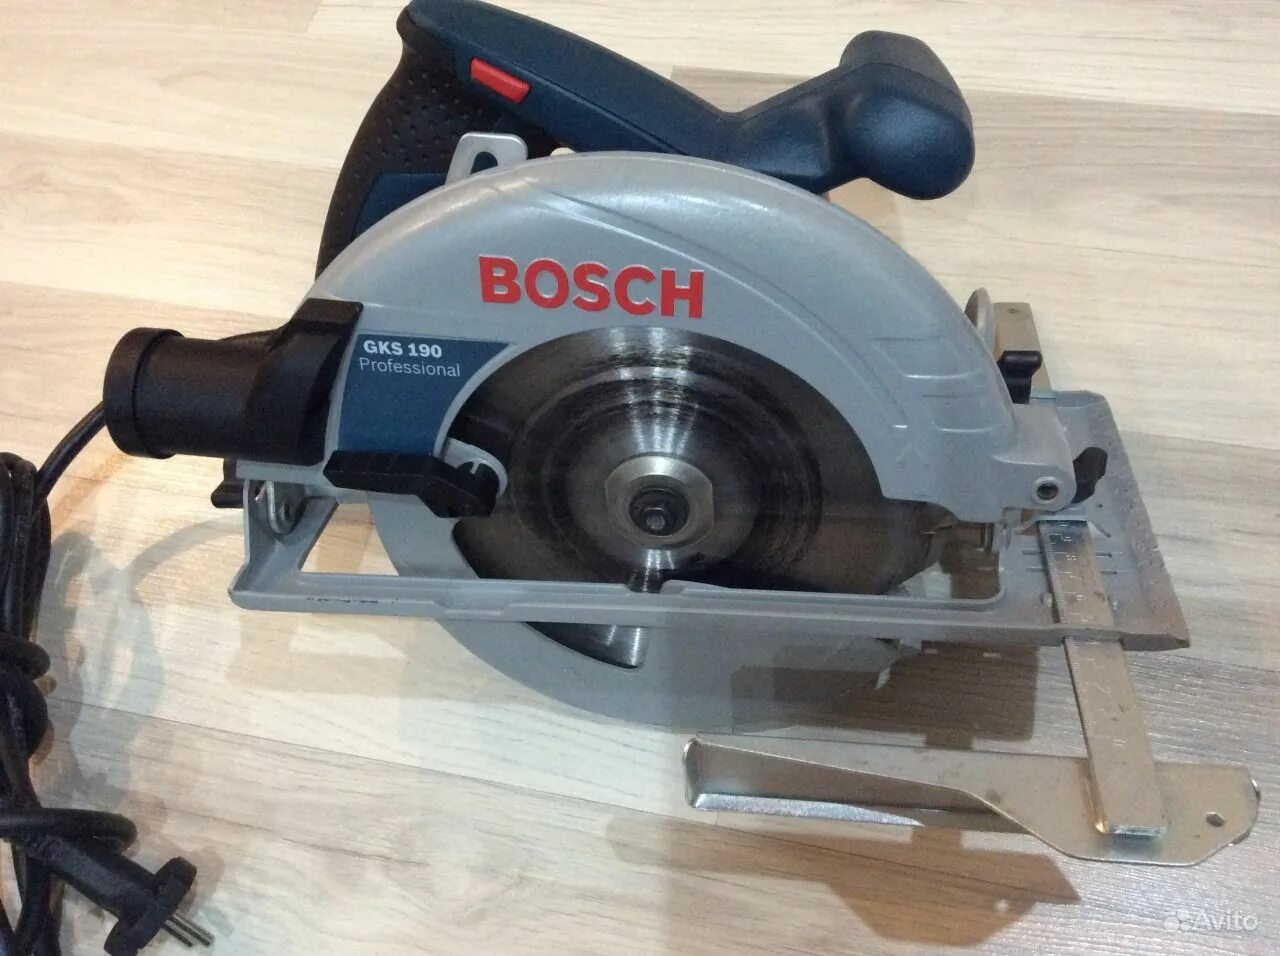 Пила дисковая bosch 190. Bosch GKS 190. Bosch 190 GKS циркулярка. Церкулярная пила "Bosch" GKS 190. Bosch GKS 190, 1400 Вт.